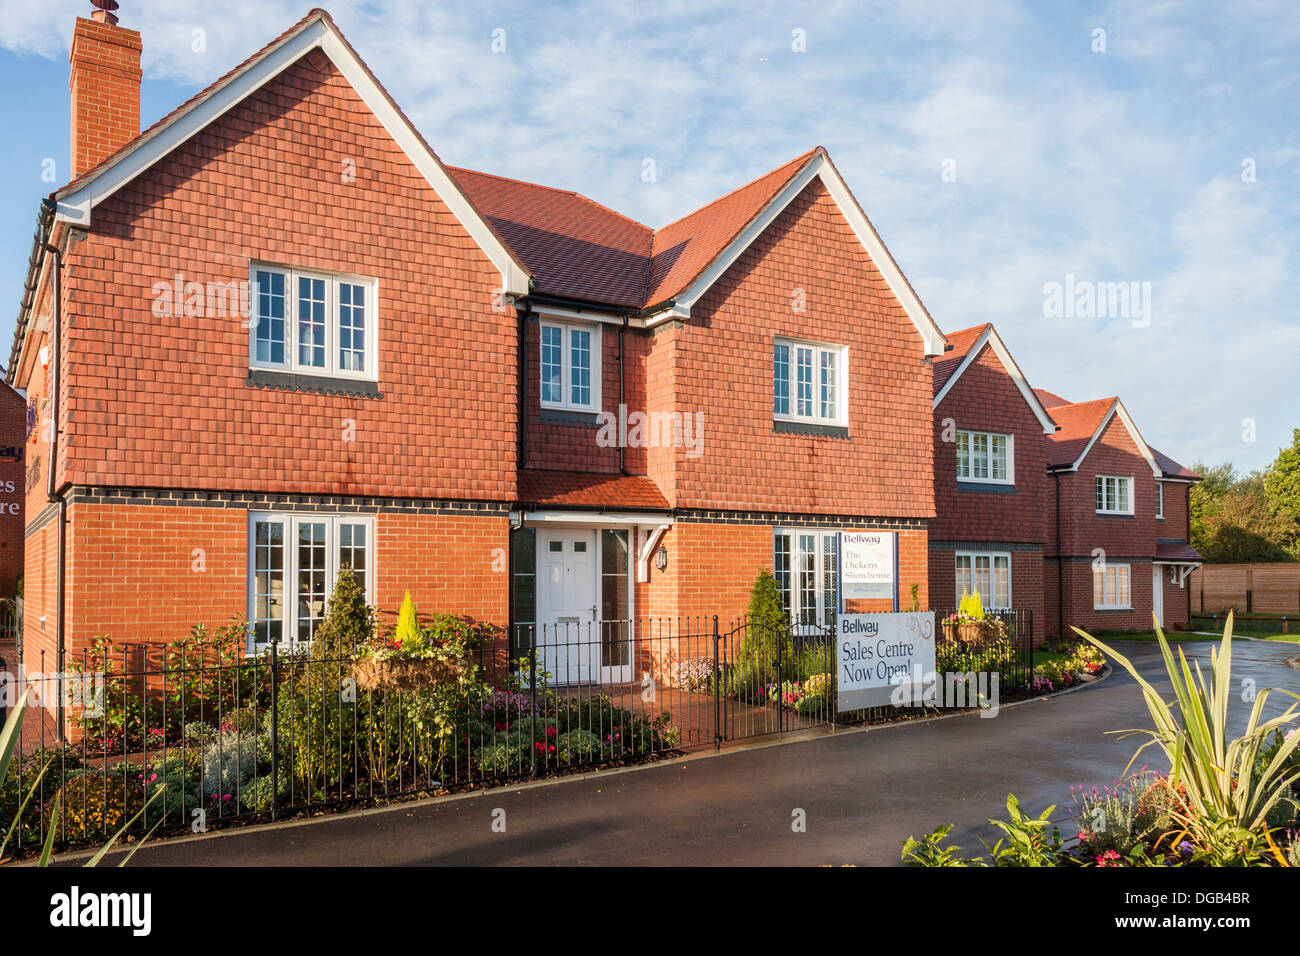 Bellway Show nach Hause in ein neues Haus bauen Wohnsiedlung im Jahr 2013. Reading, Berkshire, Südost-England, GB, UK. Stockfoto